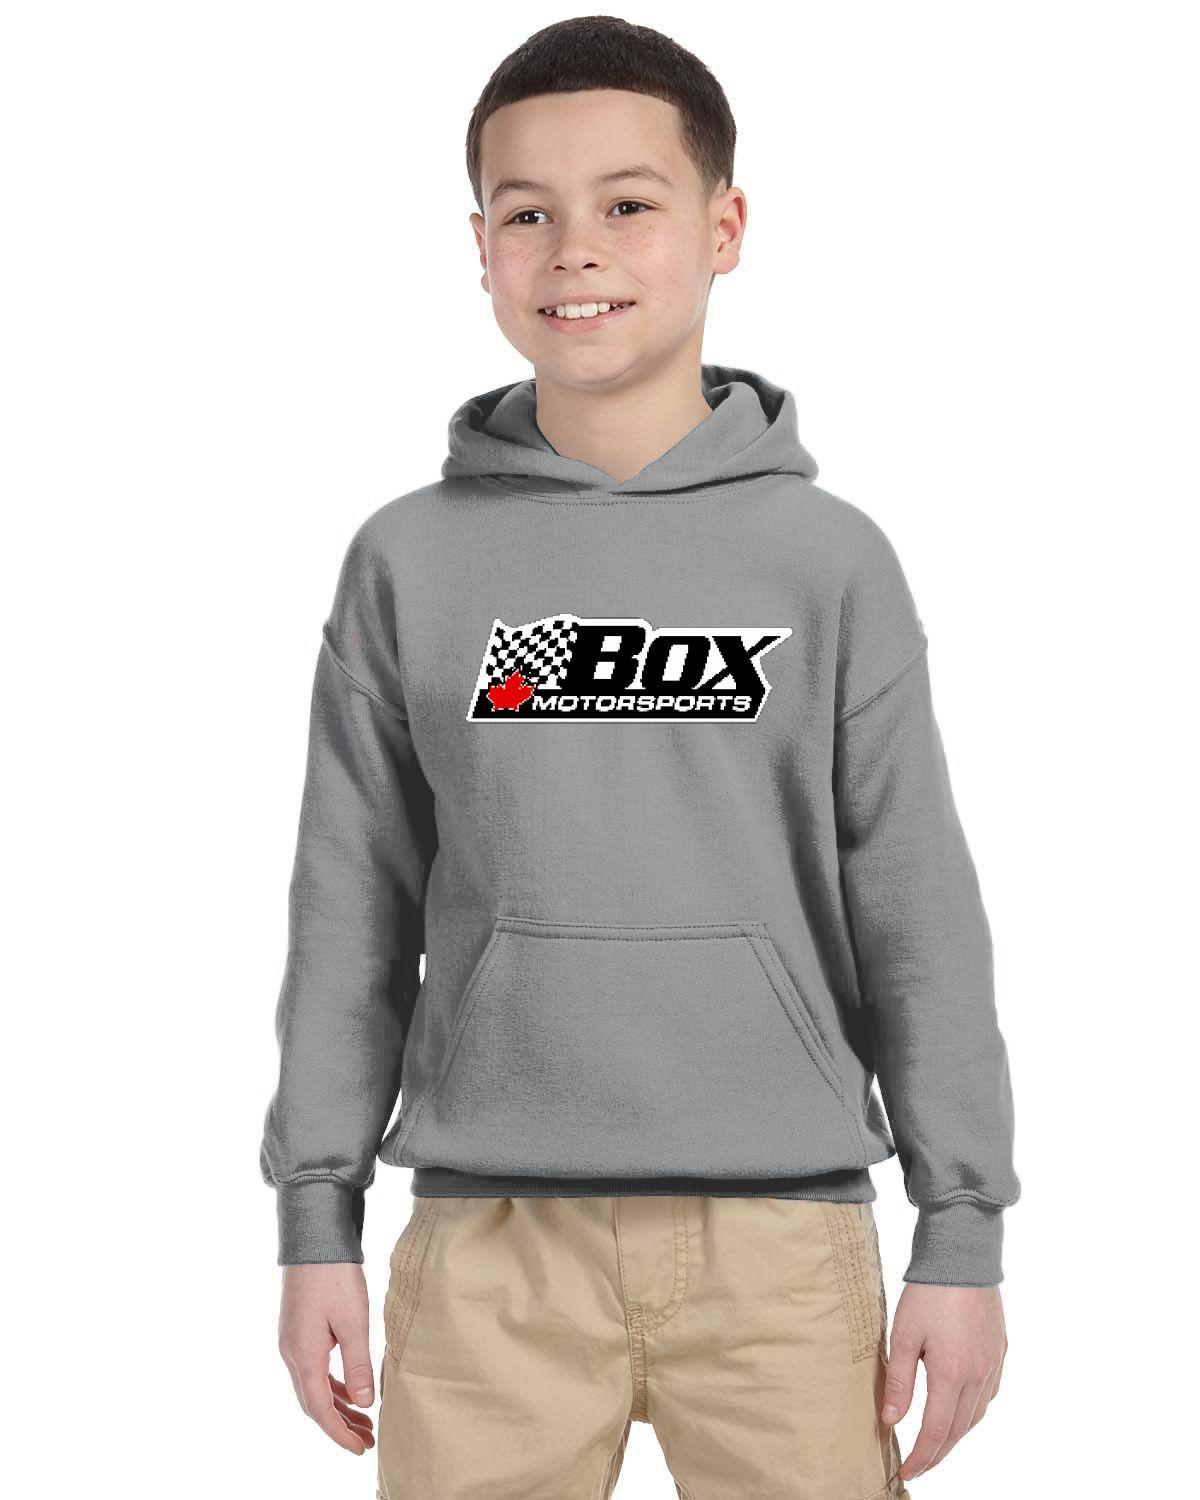 Box Motorsports Kid's Hoodie